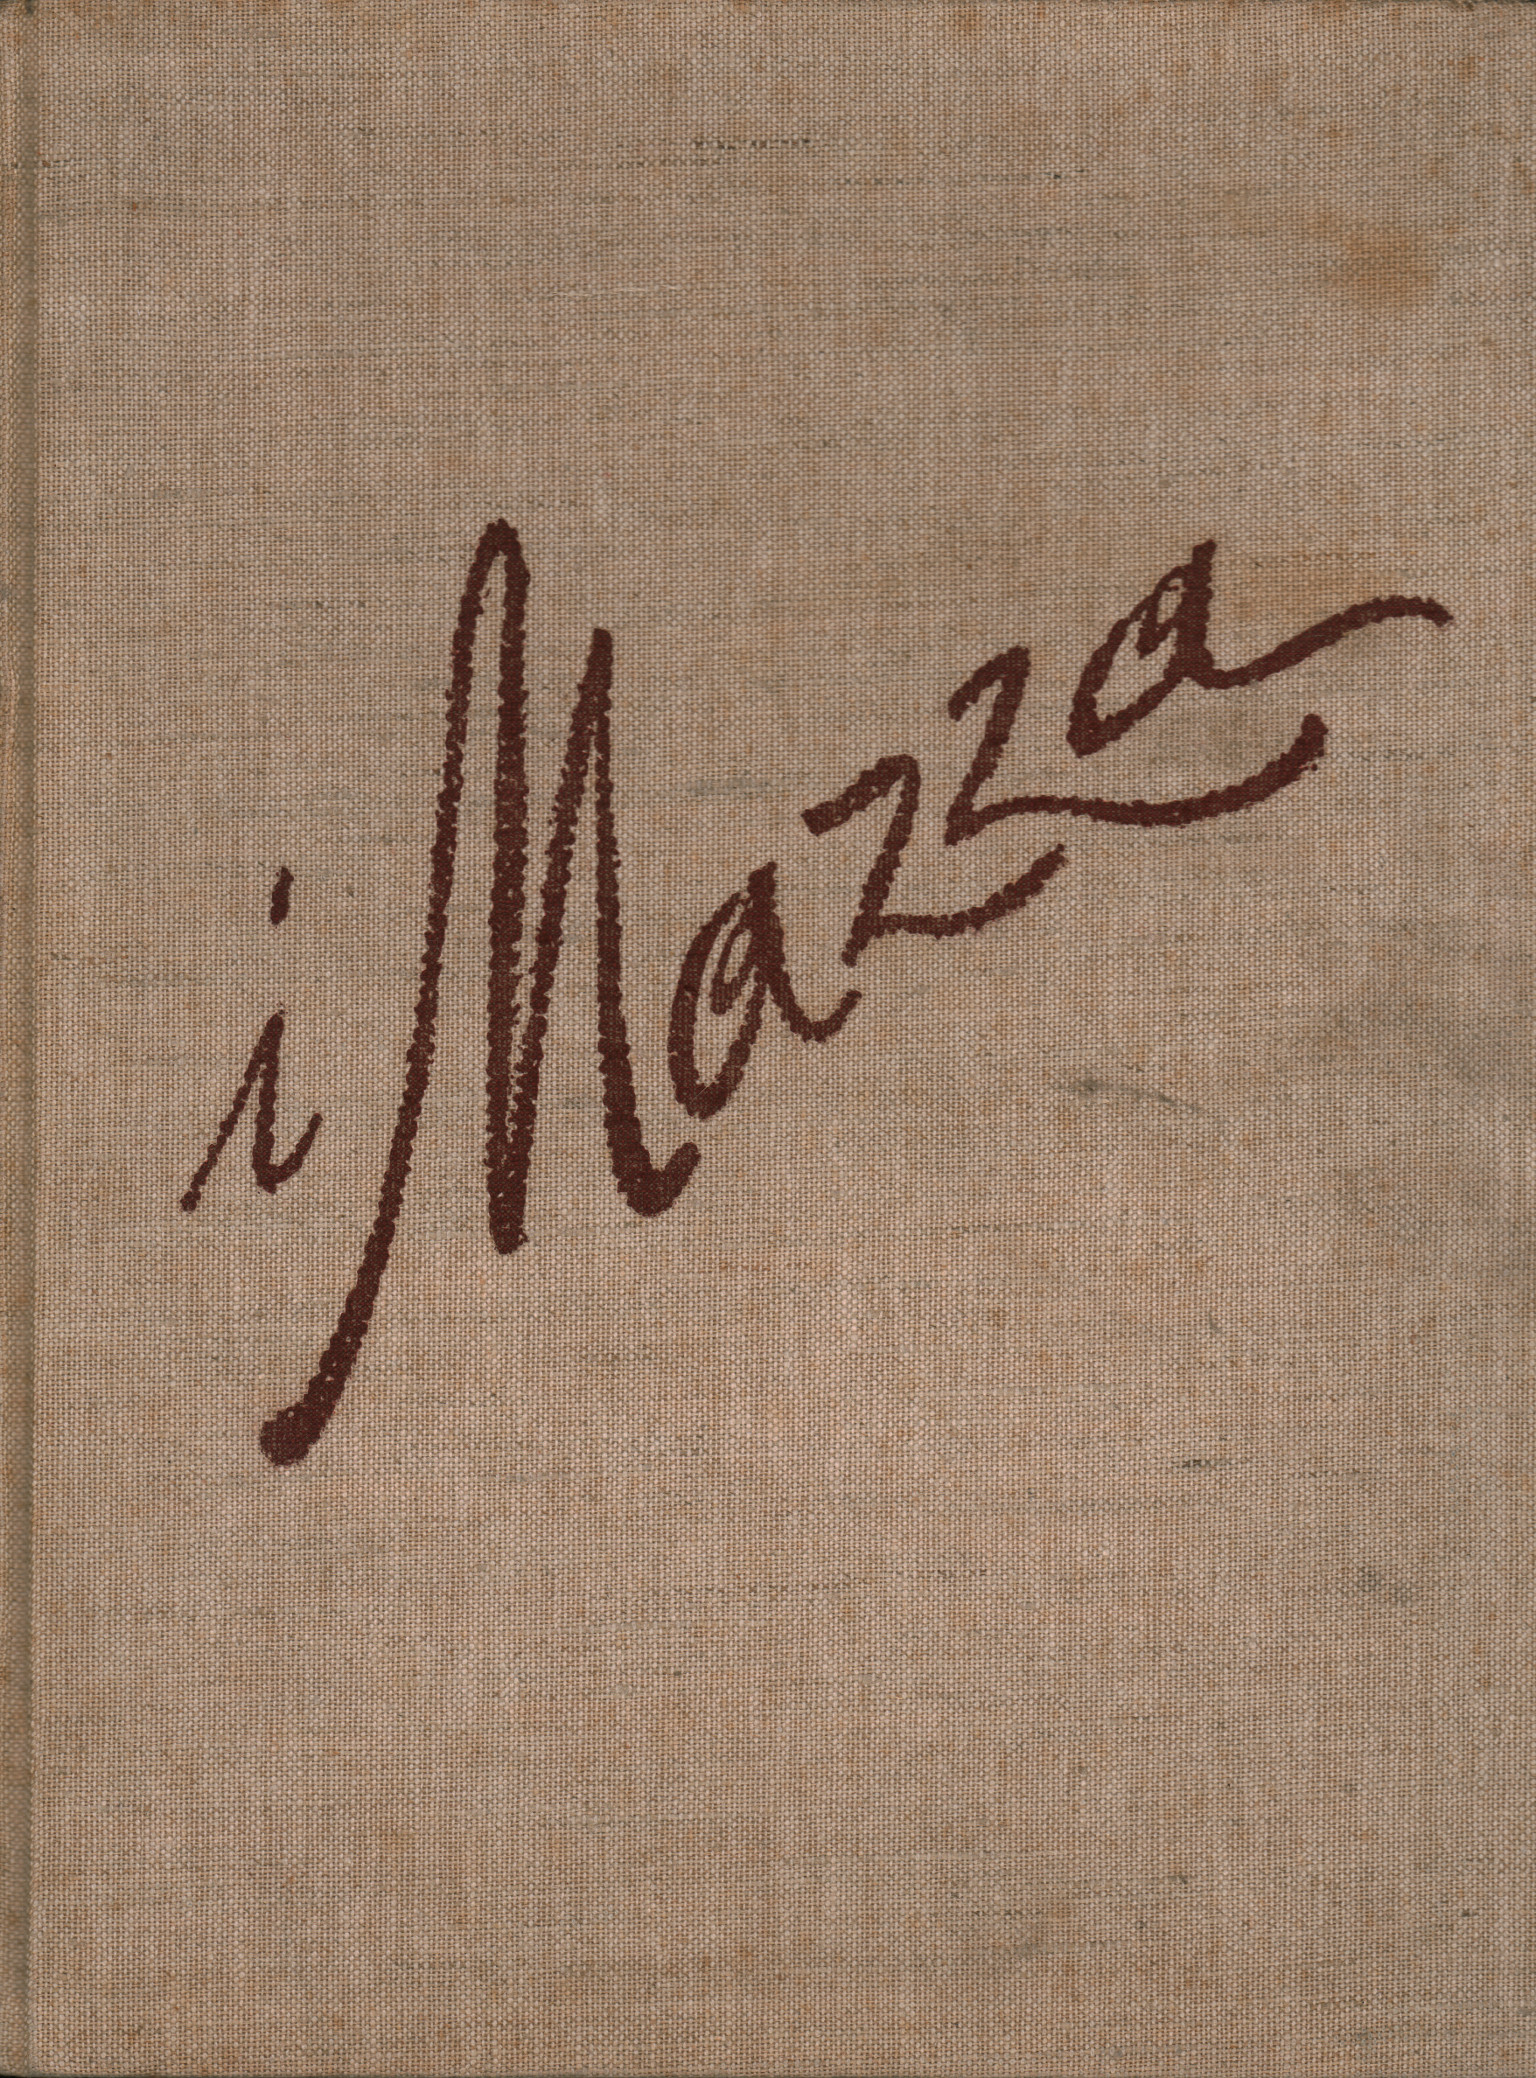 La Mazza, Aldo Mazza